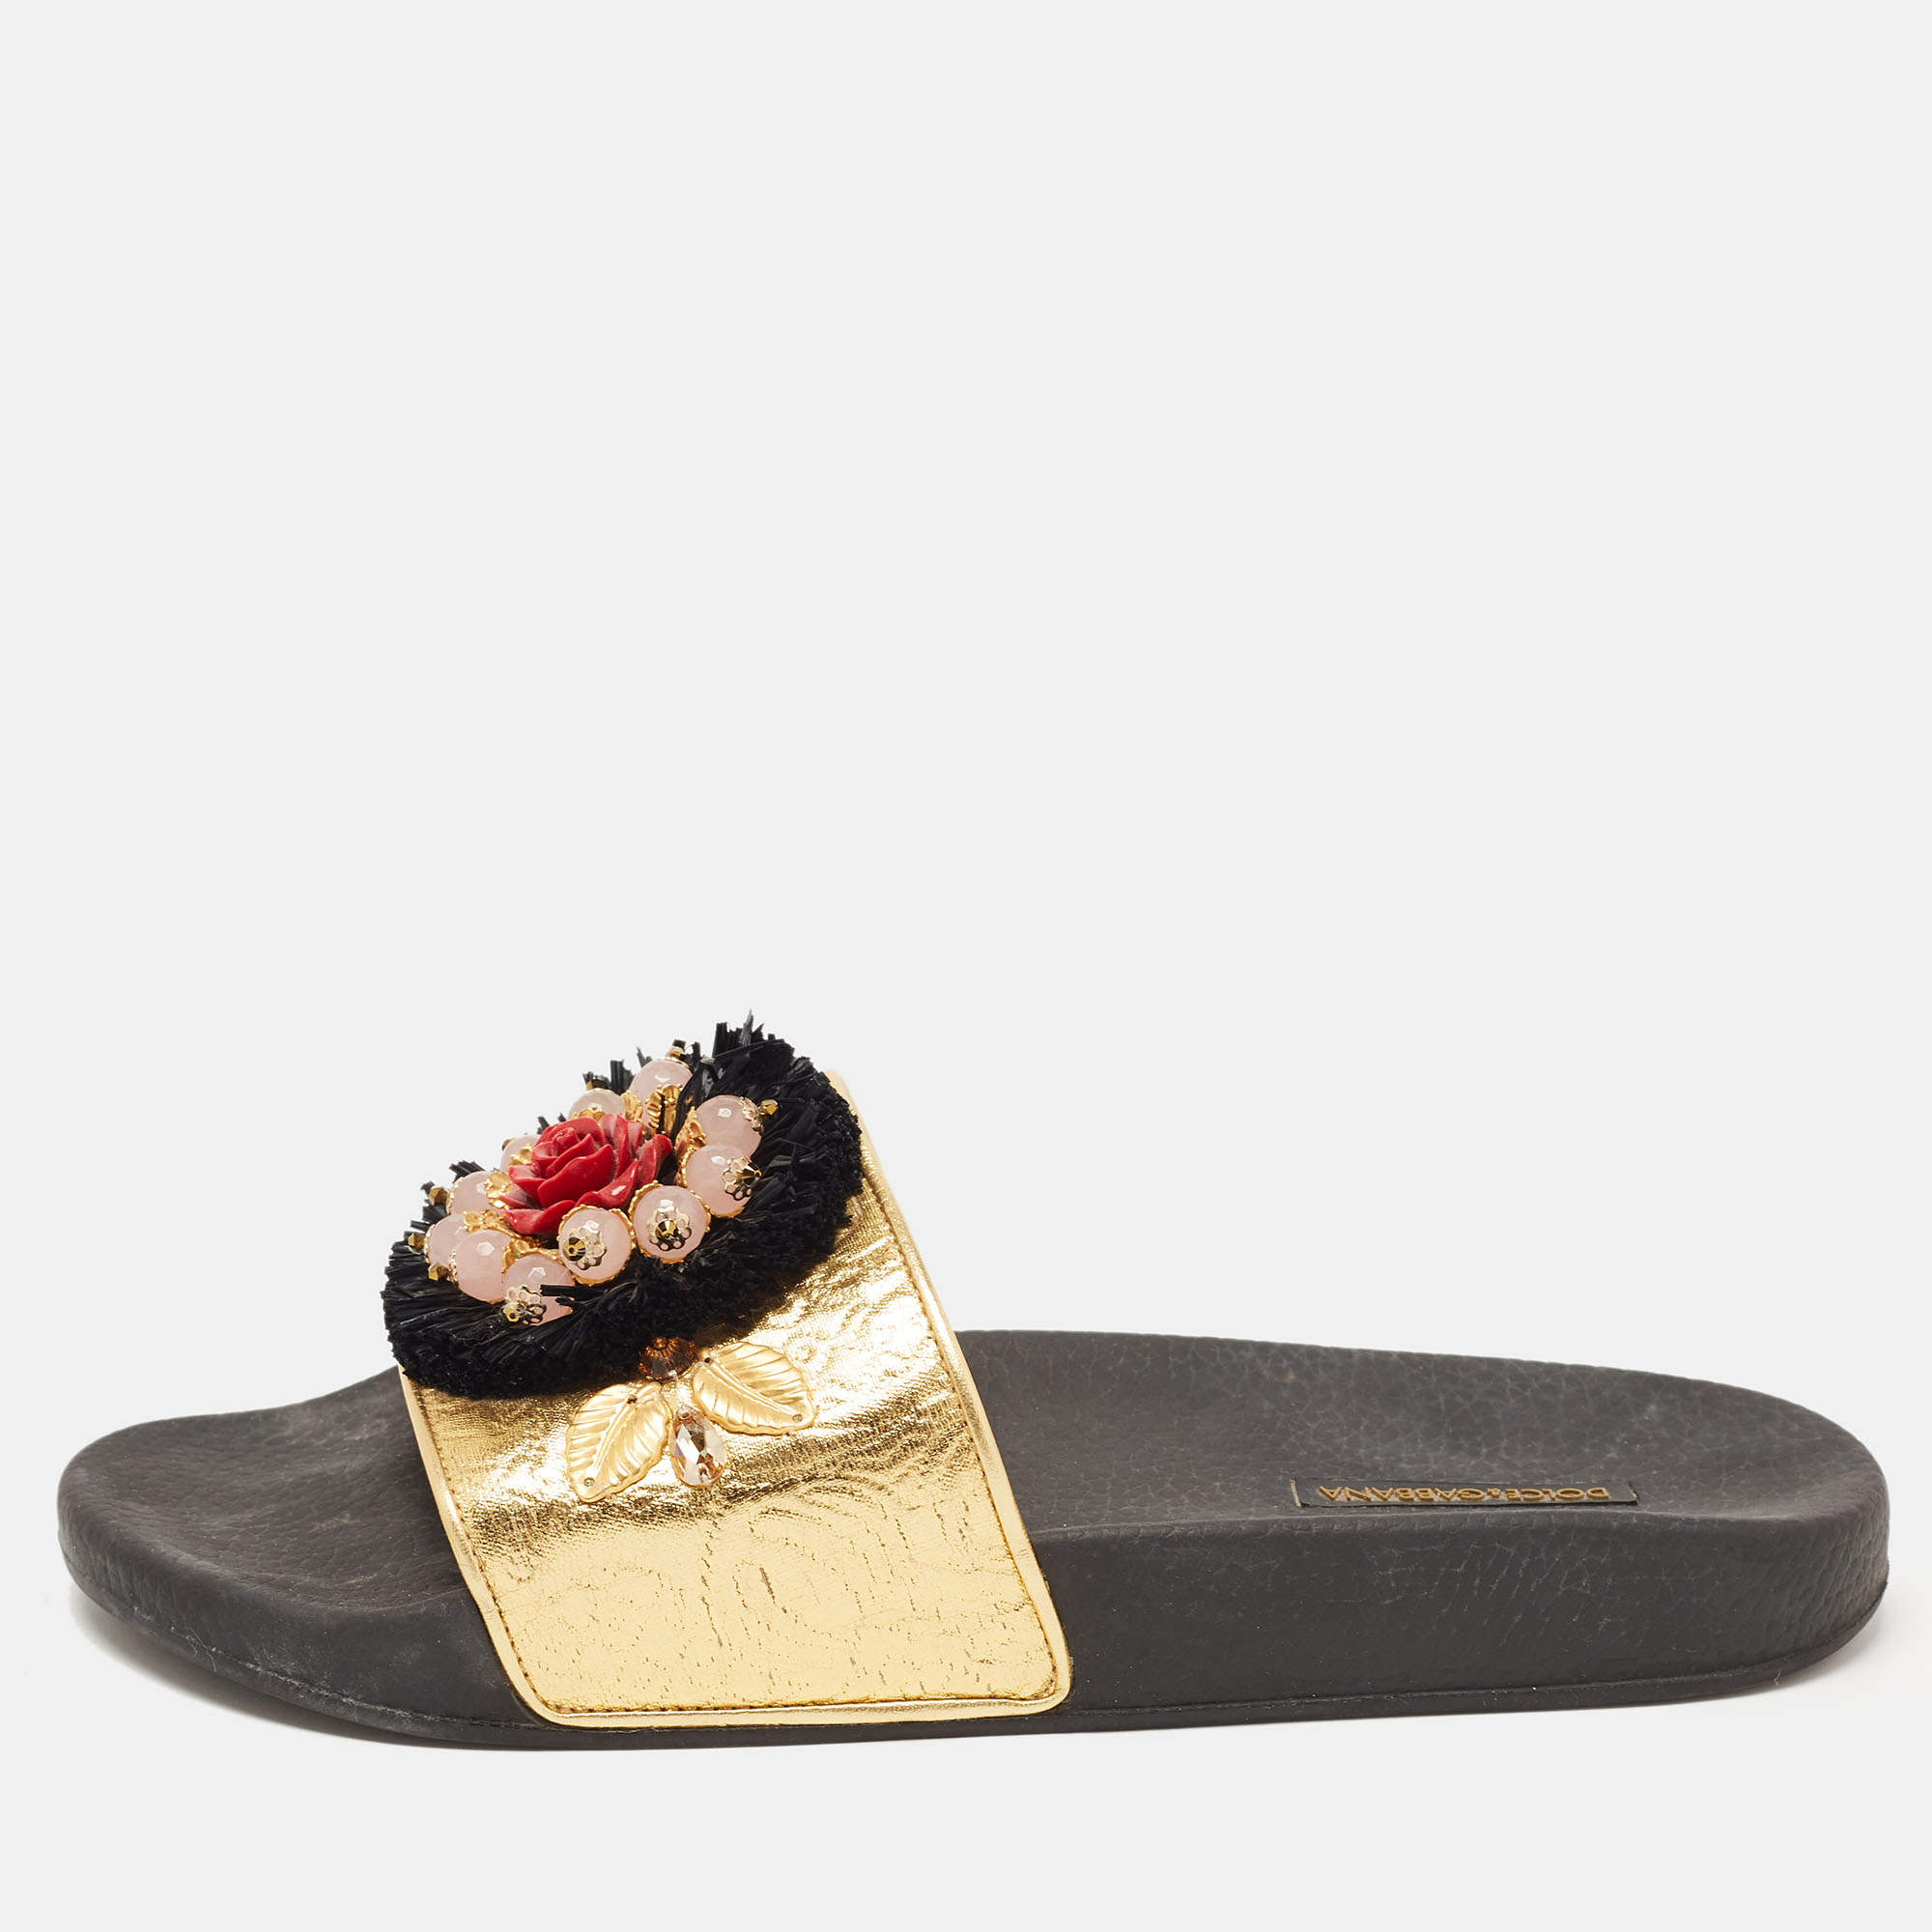 Dolce & gabbana gold jacquard embellished slide sandals size 40